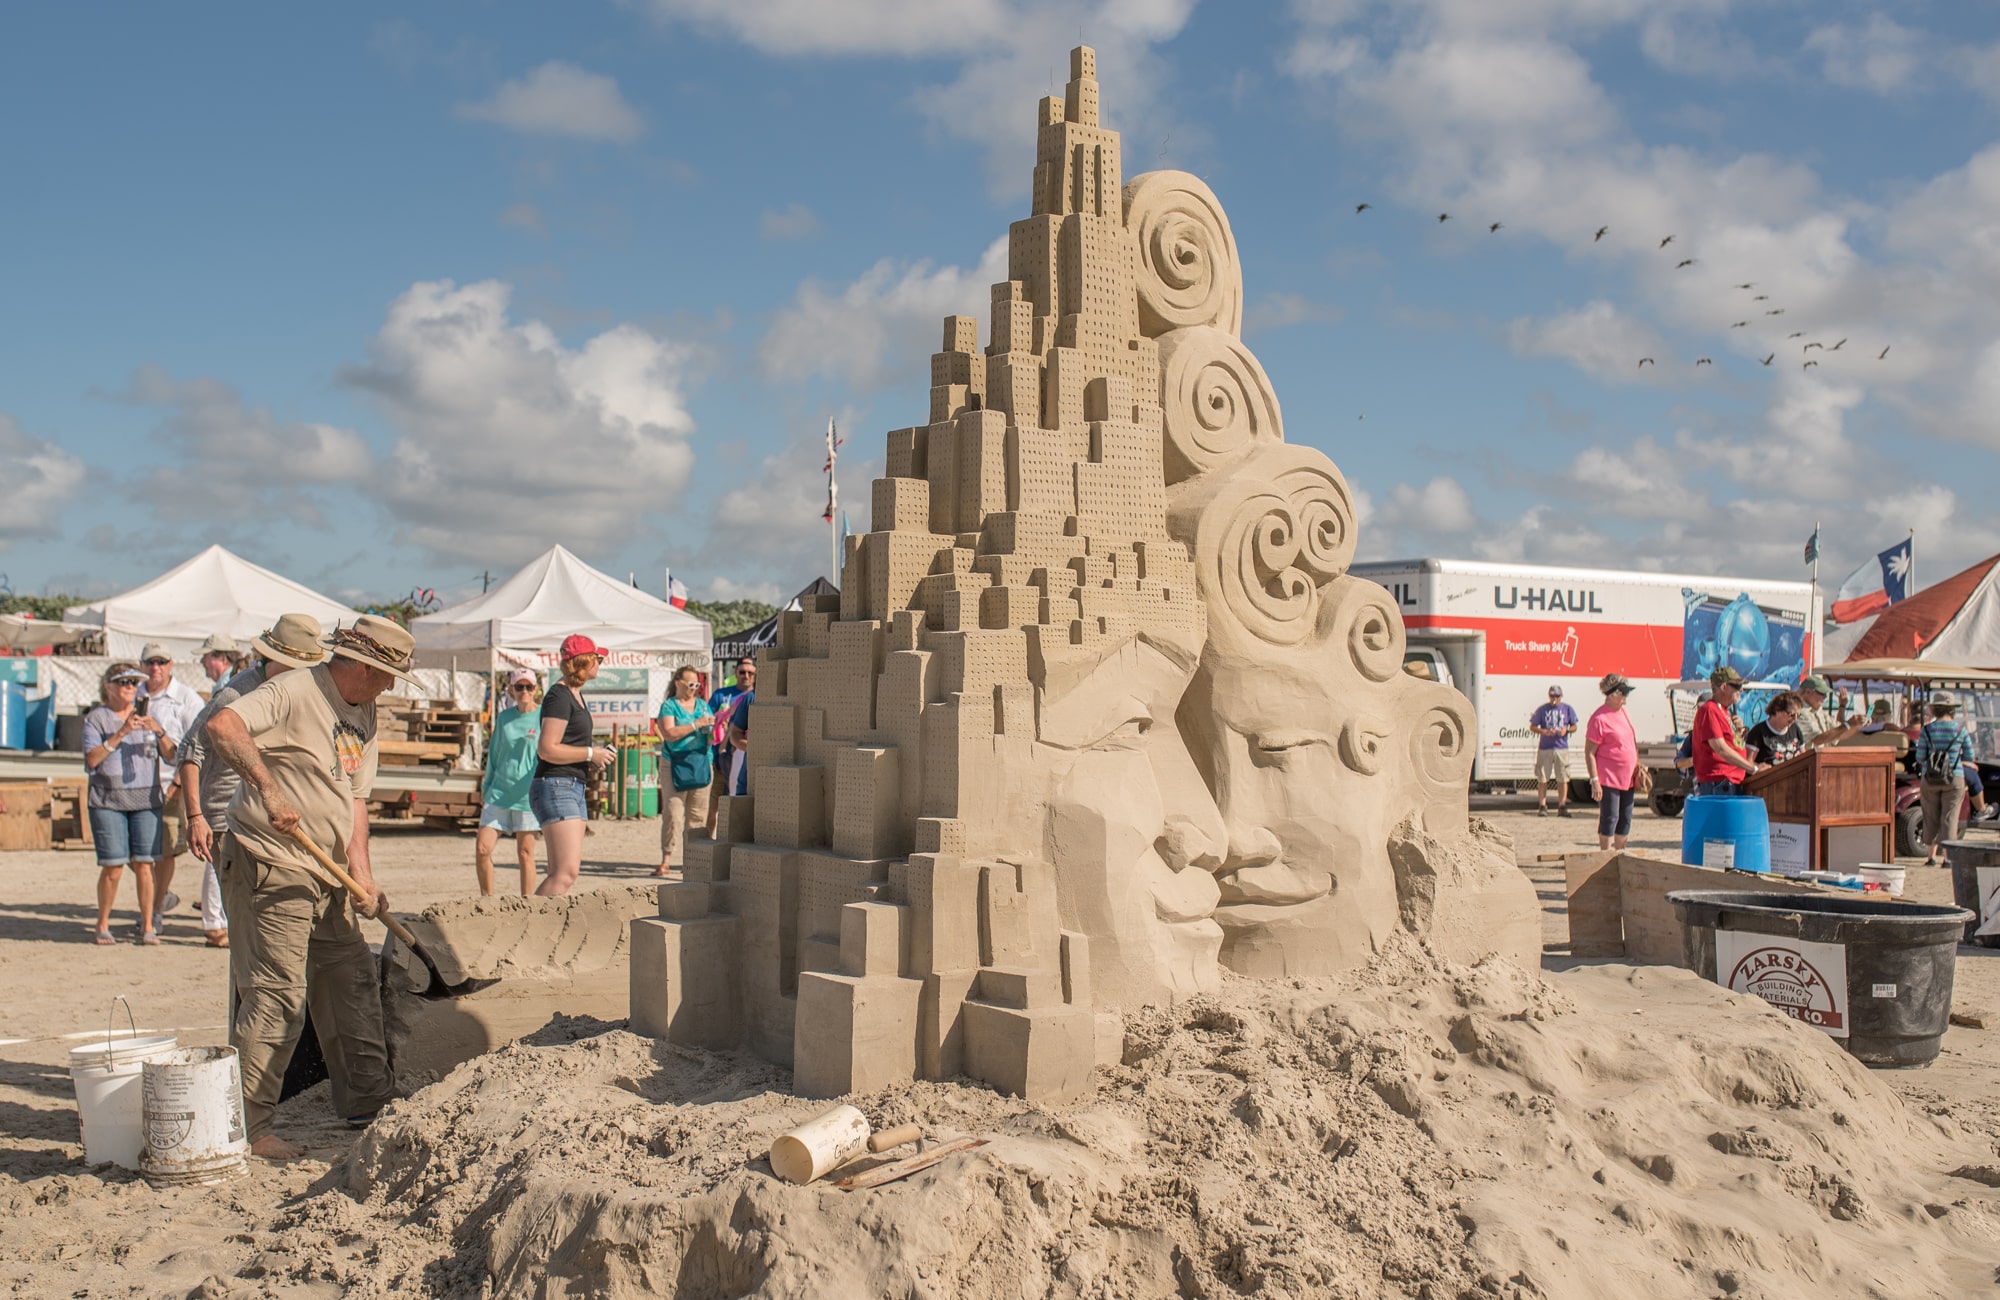 La competencia de escultura de arena más grande en los Estados Unidos ocurre este mes en Texas - 7